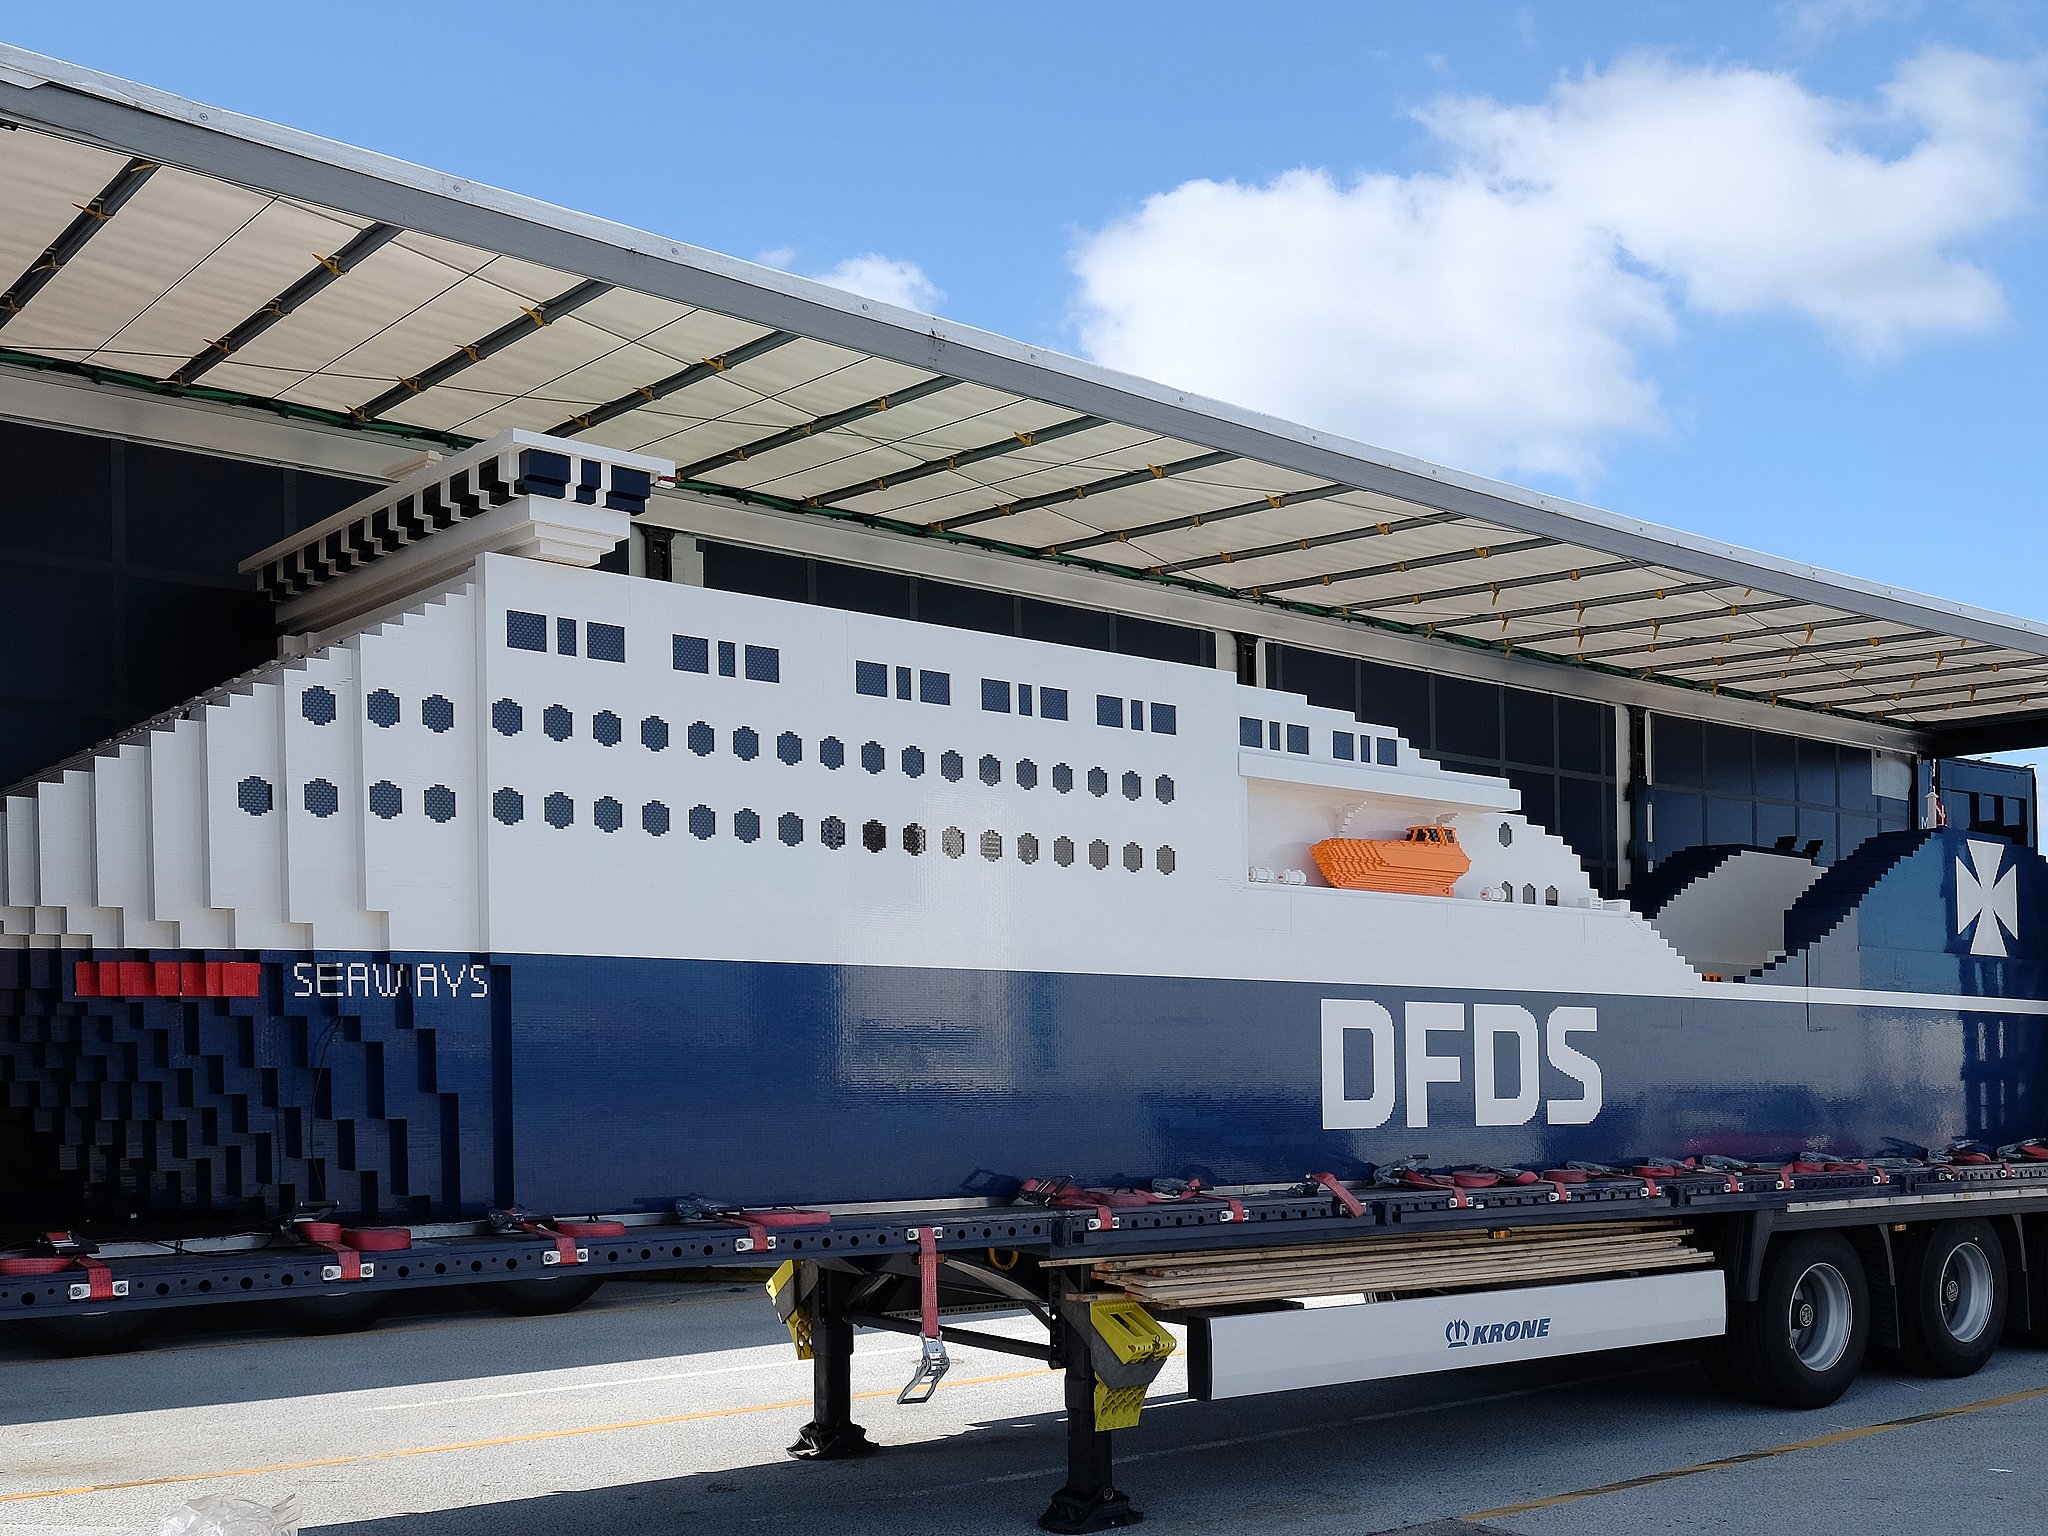 Verdens største Lego-skib ankommet Helsingør | TV 2